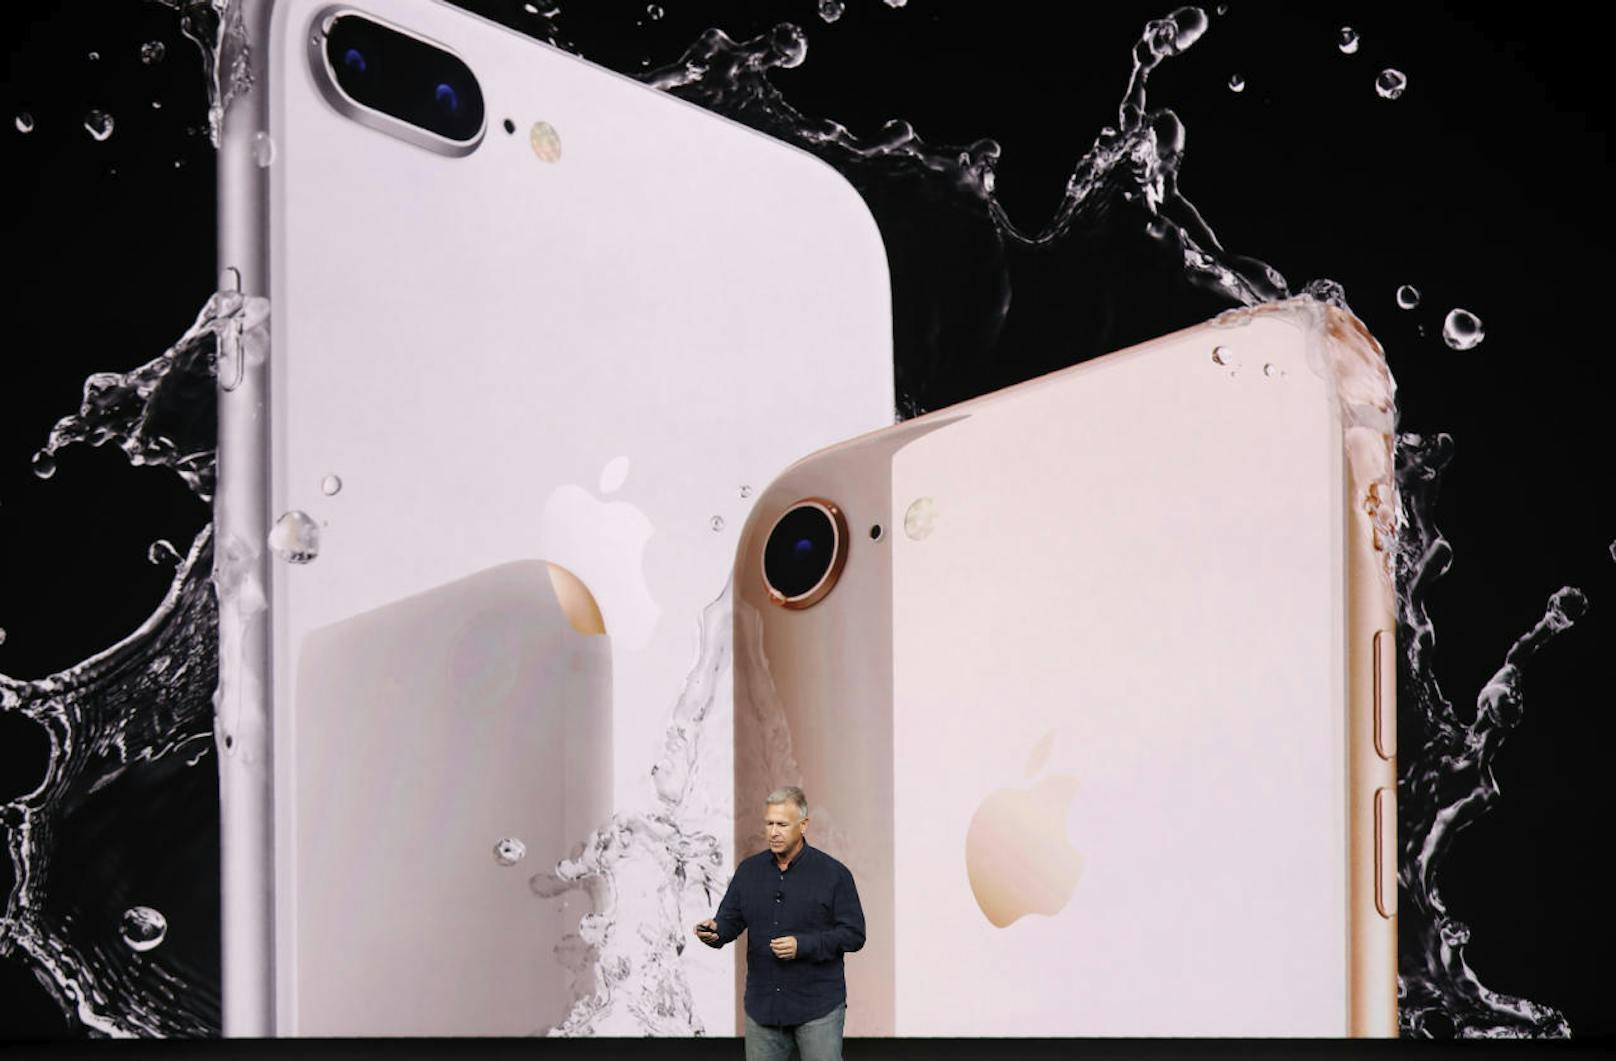 Phil Schiller stellte die neuen iPhone 8 und iPhone 8 Plus vor.